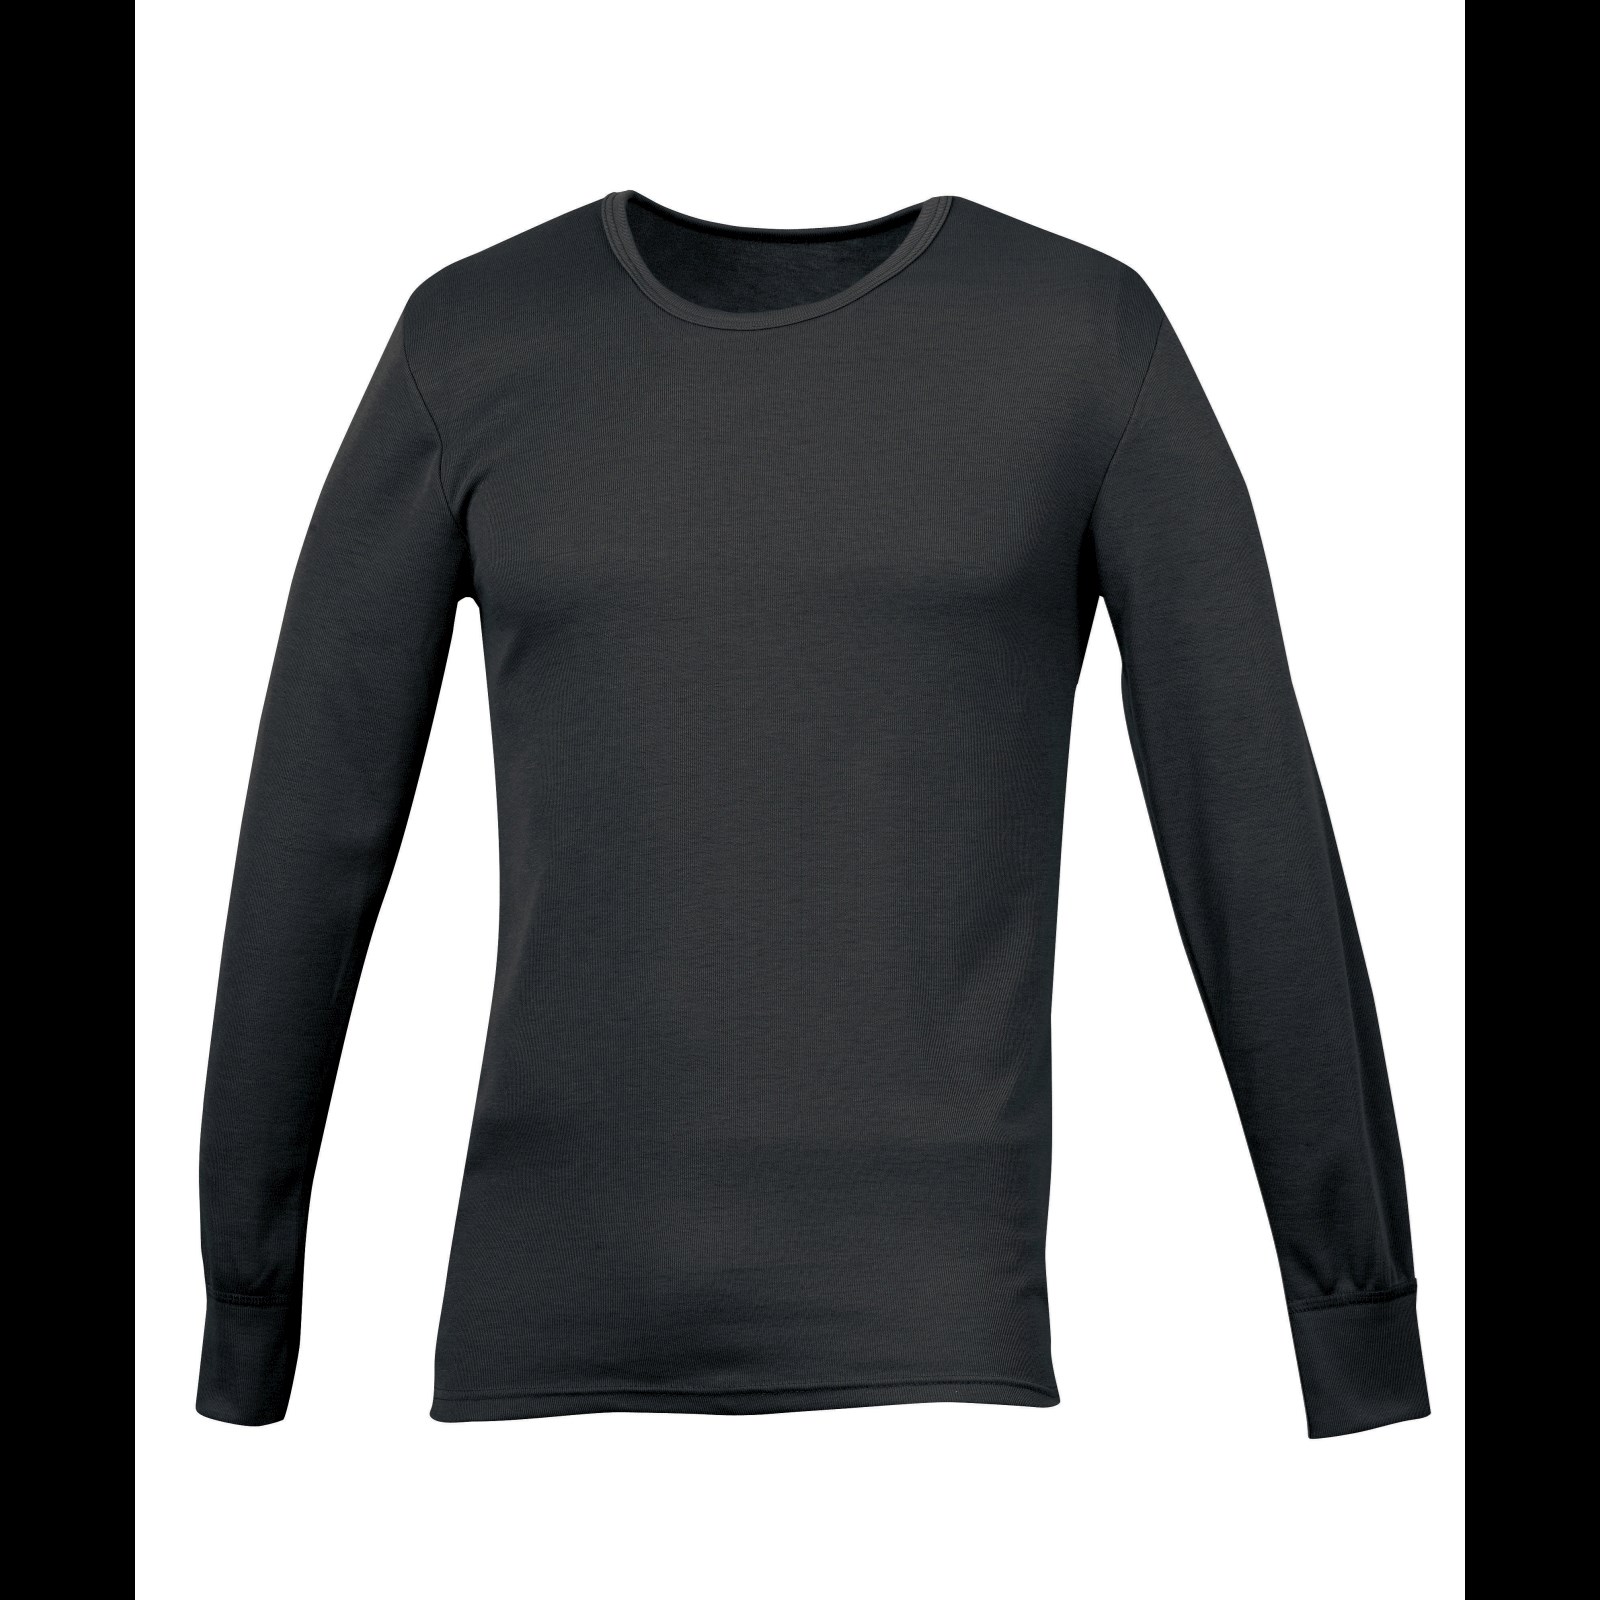 5€67 sur T-shirt thermique - Femme (FR 38-40) (Noir) - UTTHERM4 -  Sous-vêtements thermiques de sport - Achat & prix